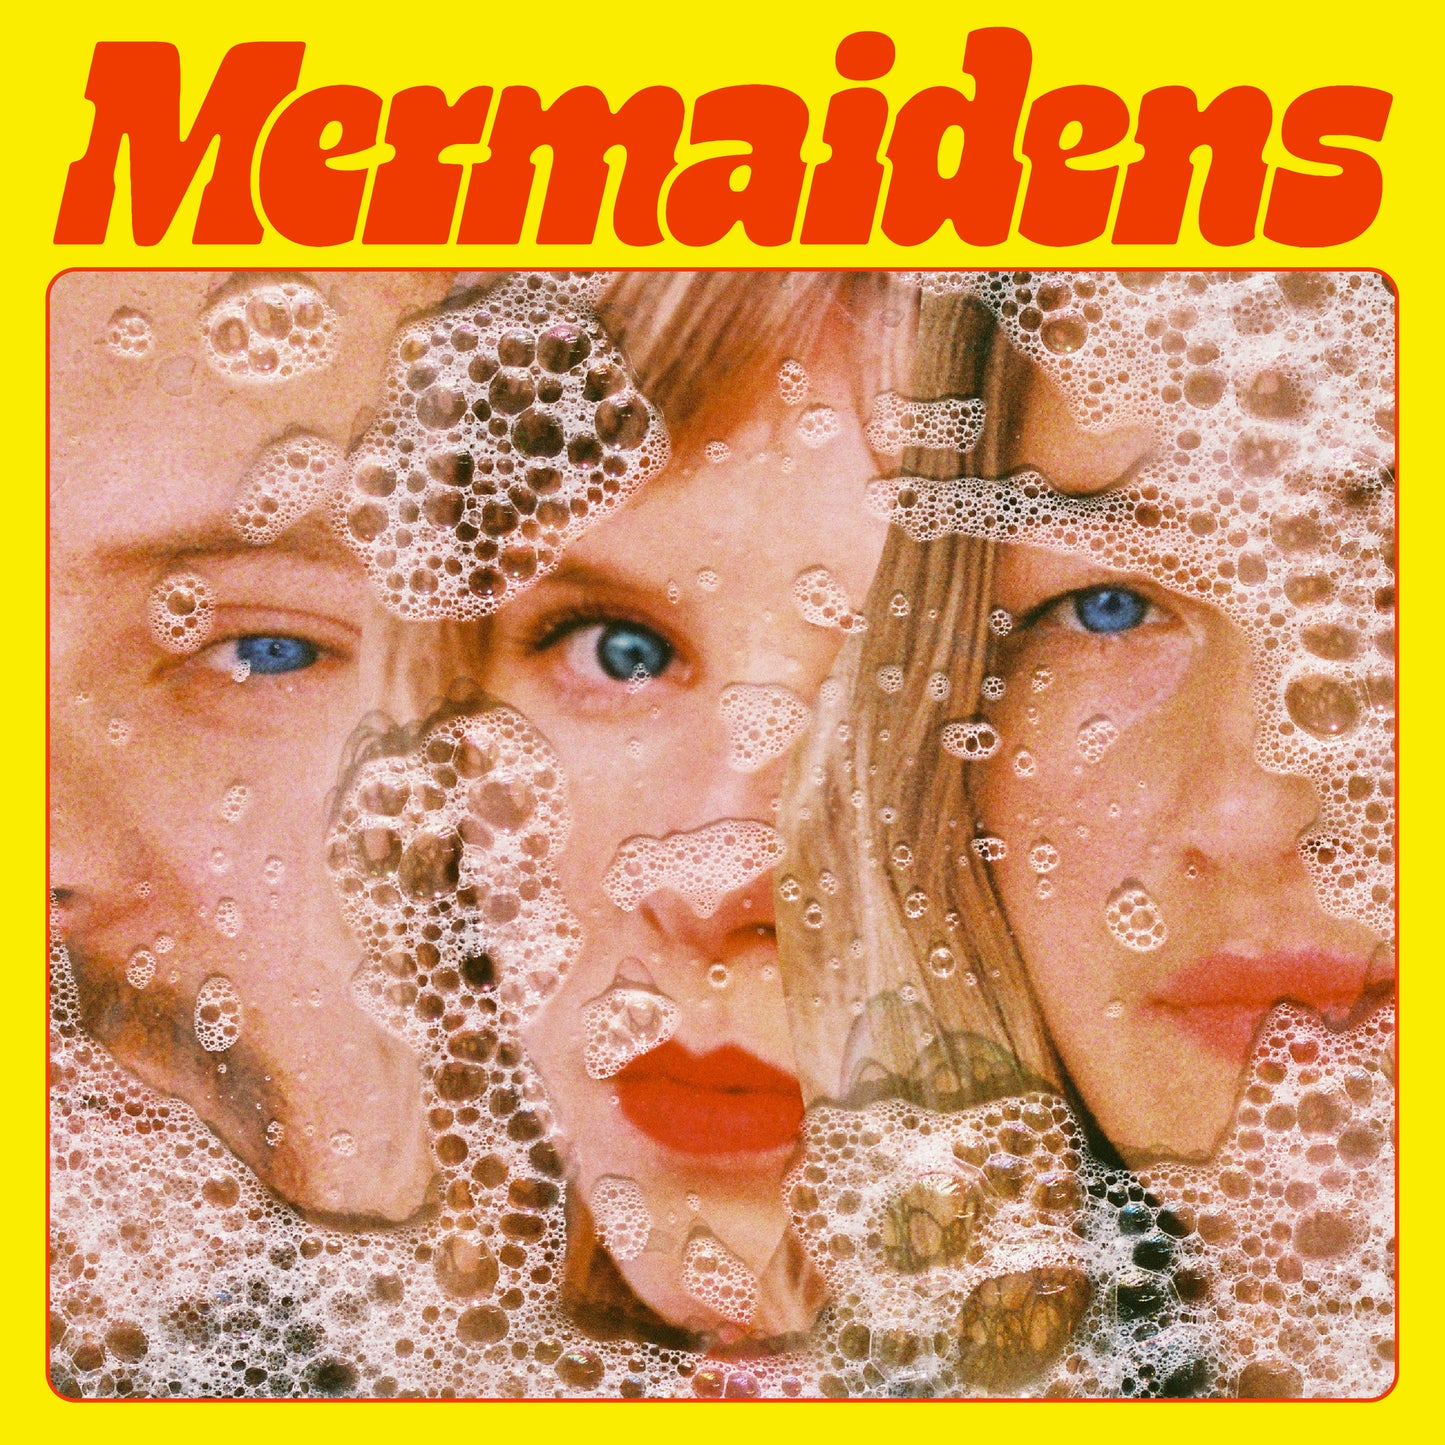  Mermaidens - Mermaidens | Buy the Vinyl LP from Flying Nun Records